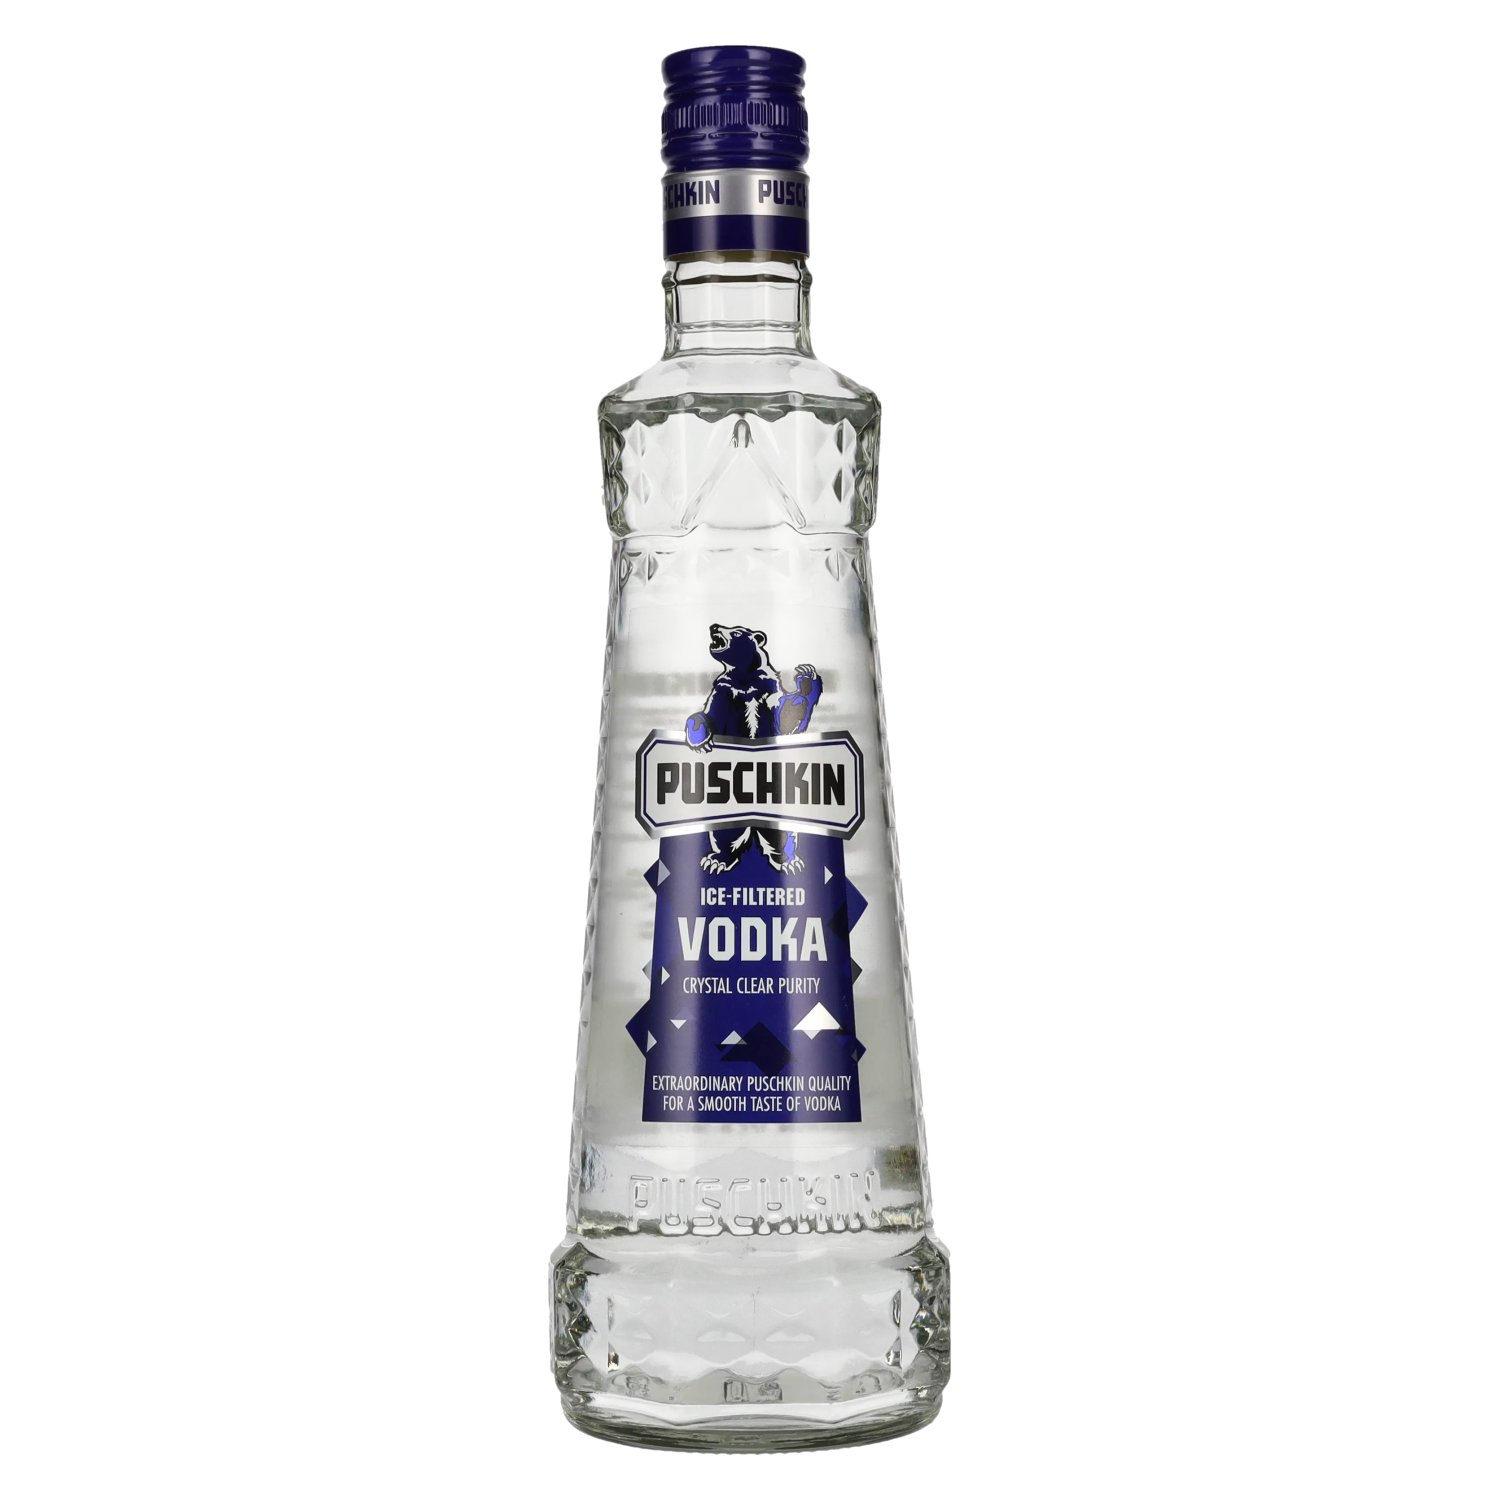 Puschkin Ice-Filtered Vodka 37,5% Vol. 0,7l - delicando